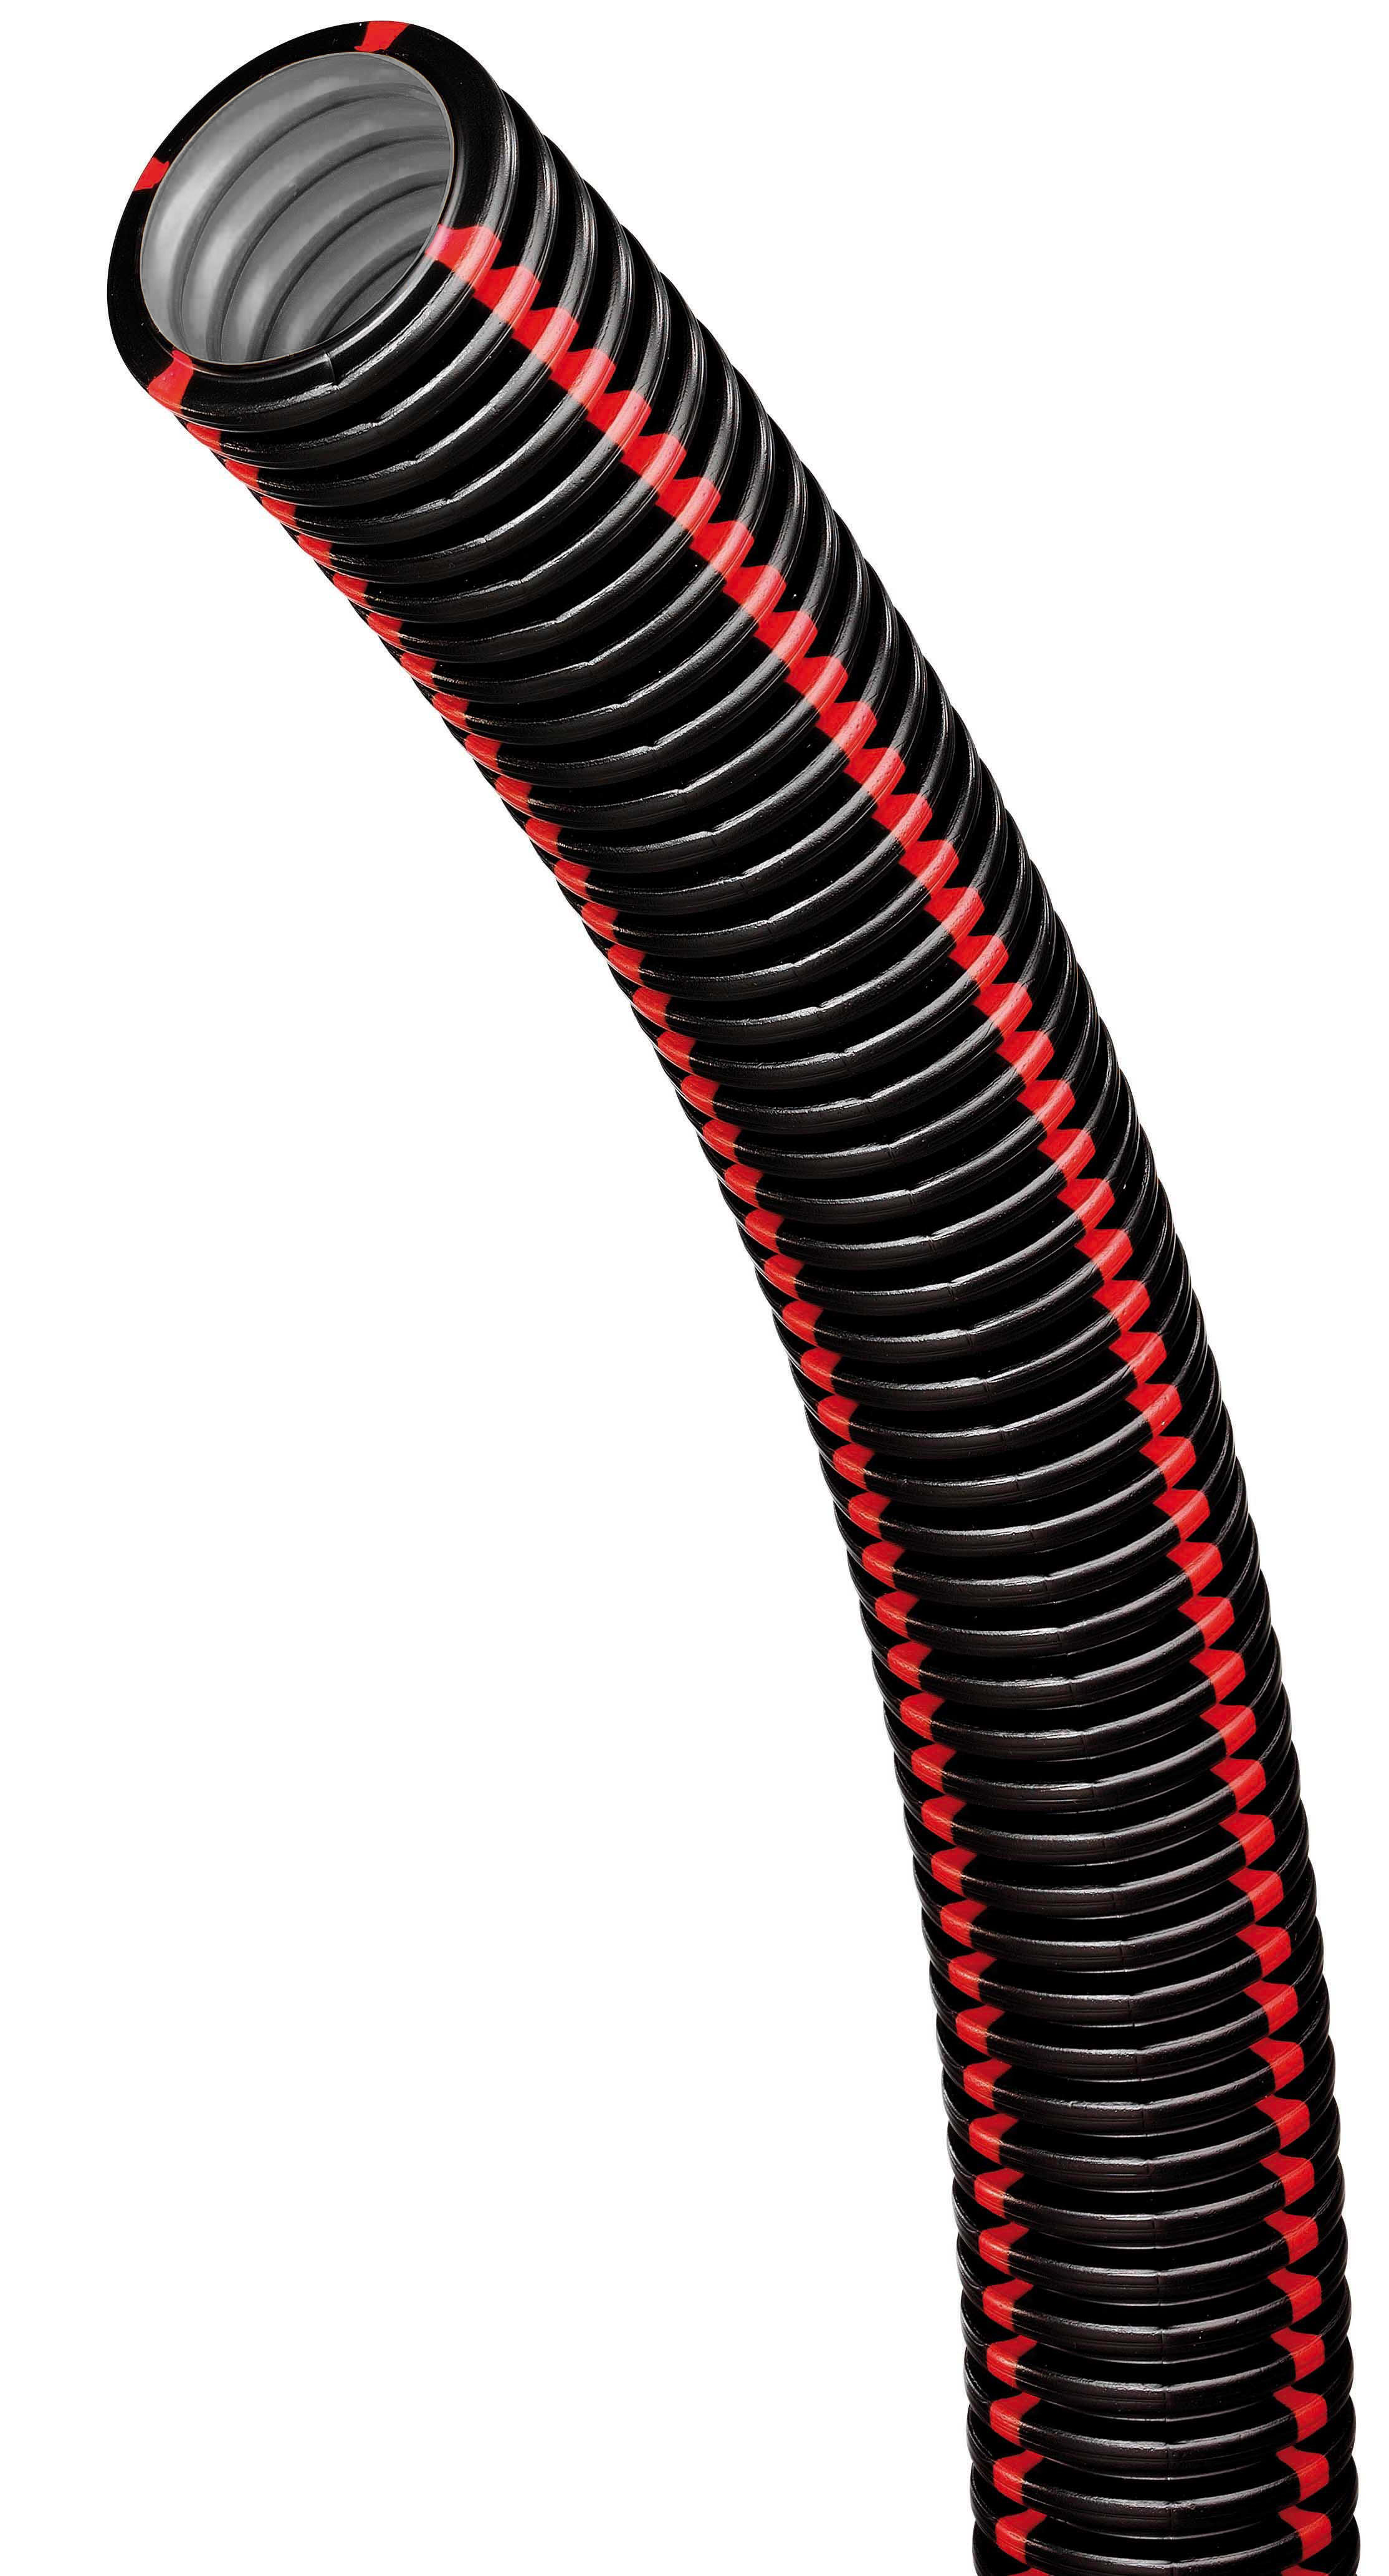 Courant - tpgliss nbr 50-50 - noir bandes rouges pour proteger les reseaux electriques